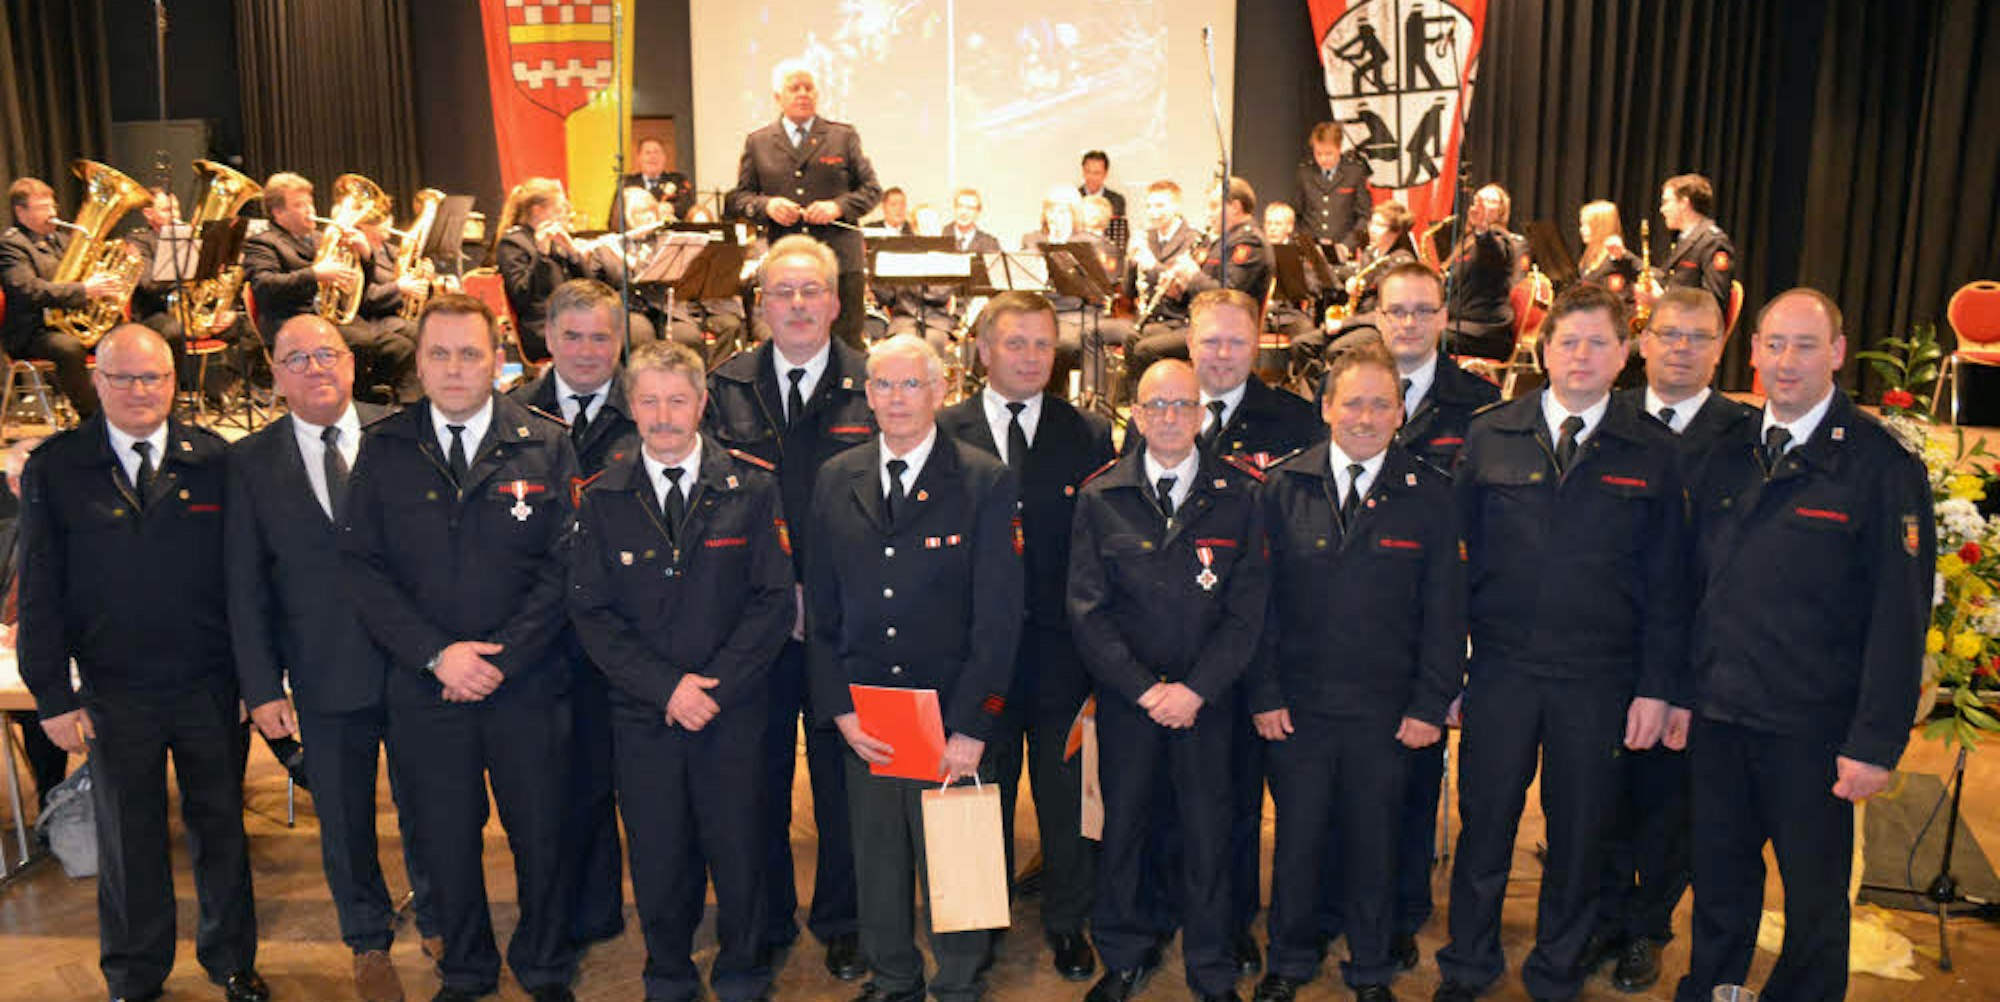 Bei der Jahresdienstbesprechung der Bergneustädter Feuerwehr im Krawinkelsaal wurden Mitglieder für 25, 35 und 50 Jahre ehrenamtliches Engagement in der Wehr ausgezeichnet.